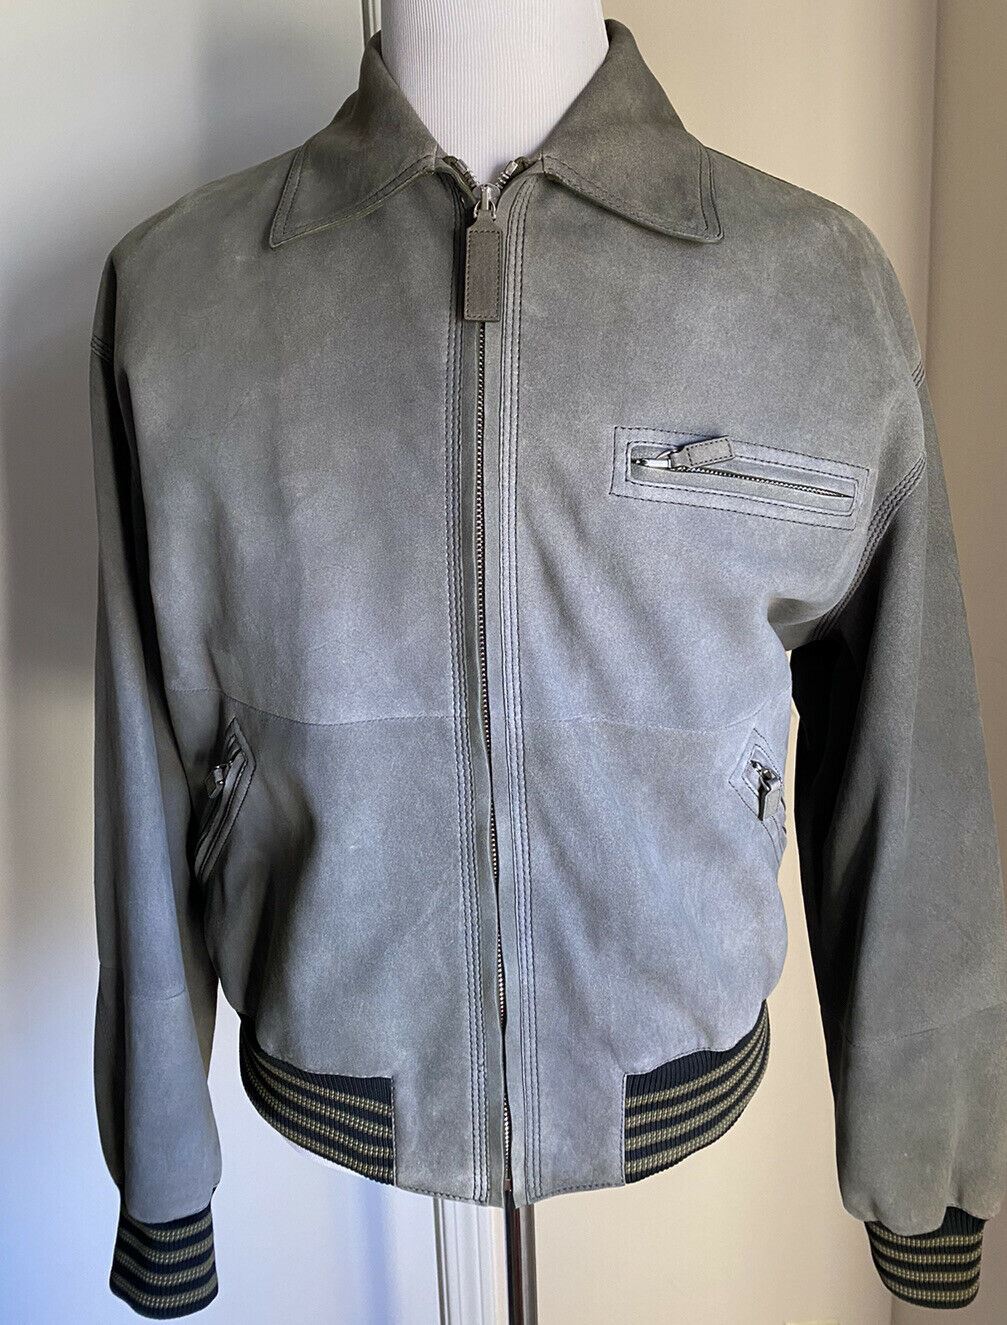 Новая мужская замшевая куртка Bottega Veneta за 4400 долларов США (50 евро), Италия